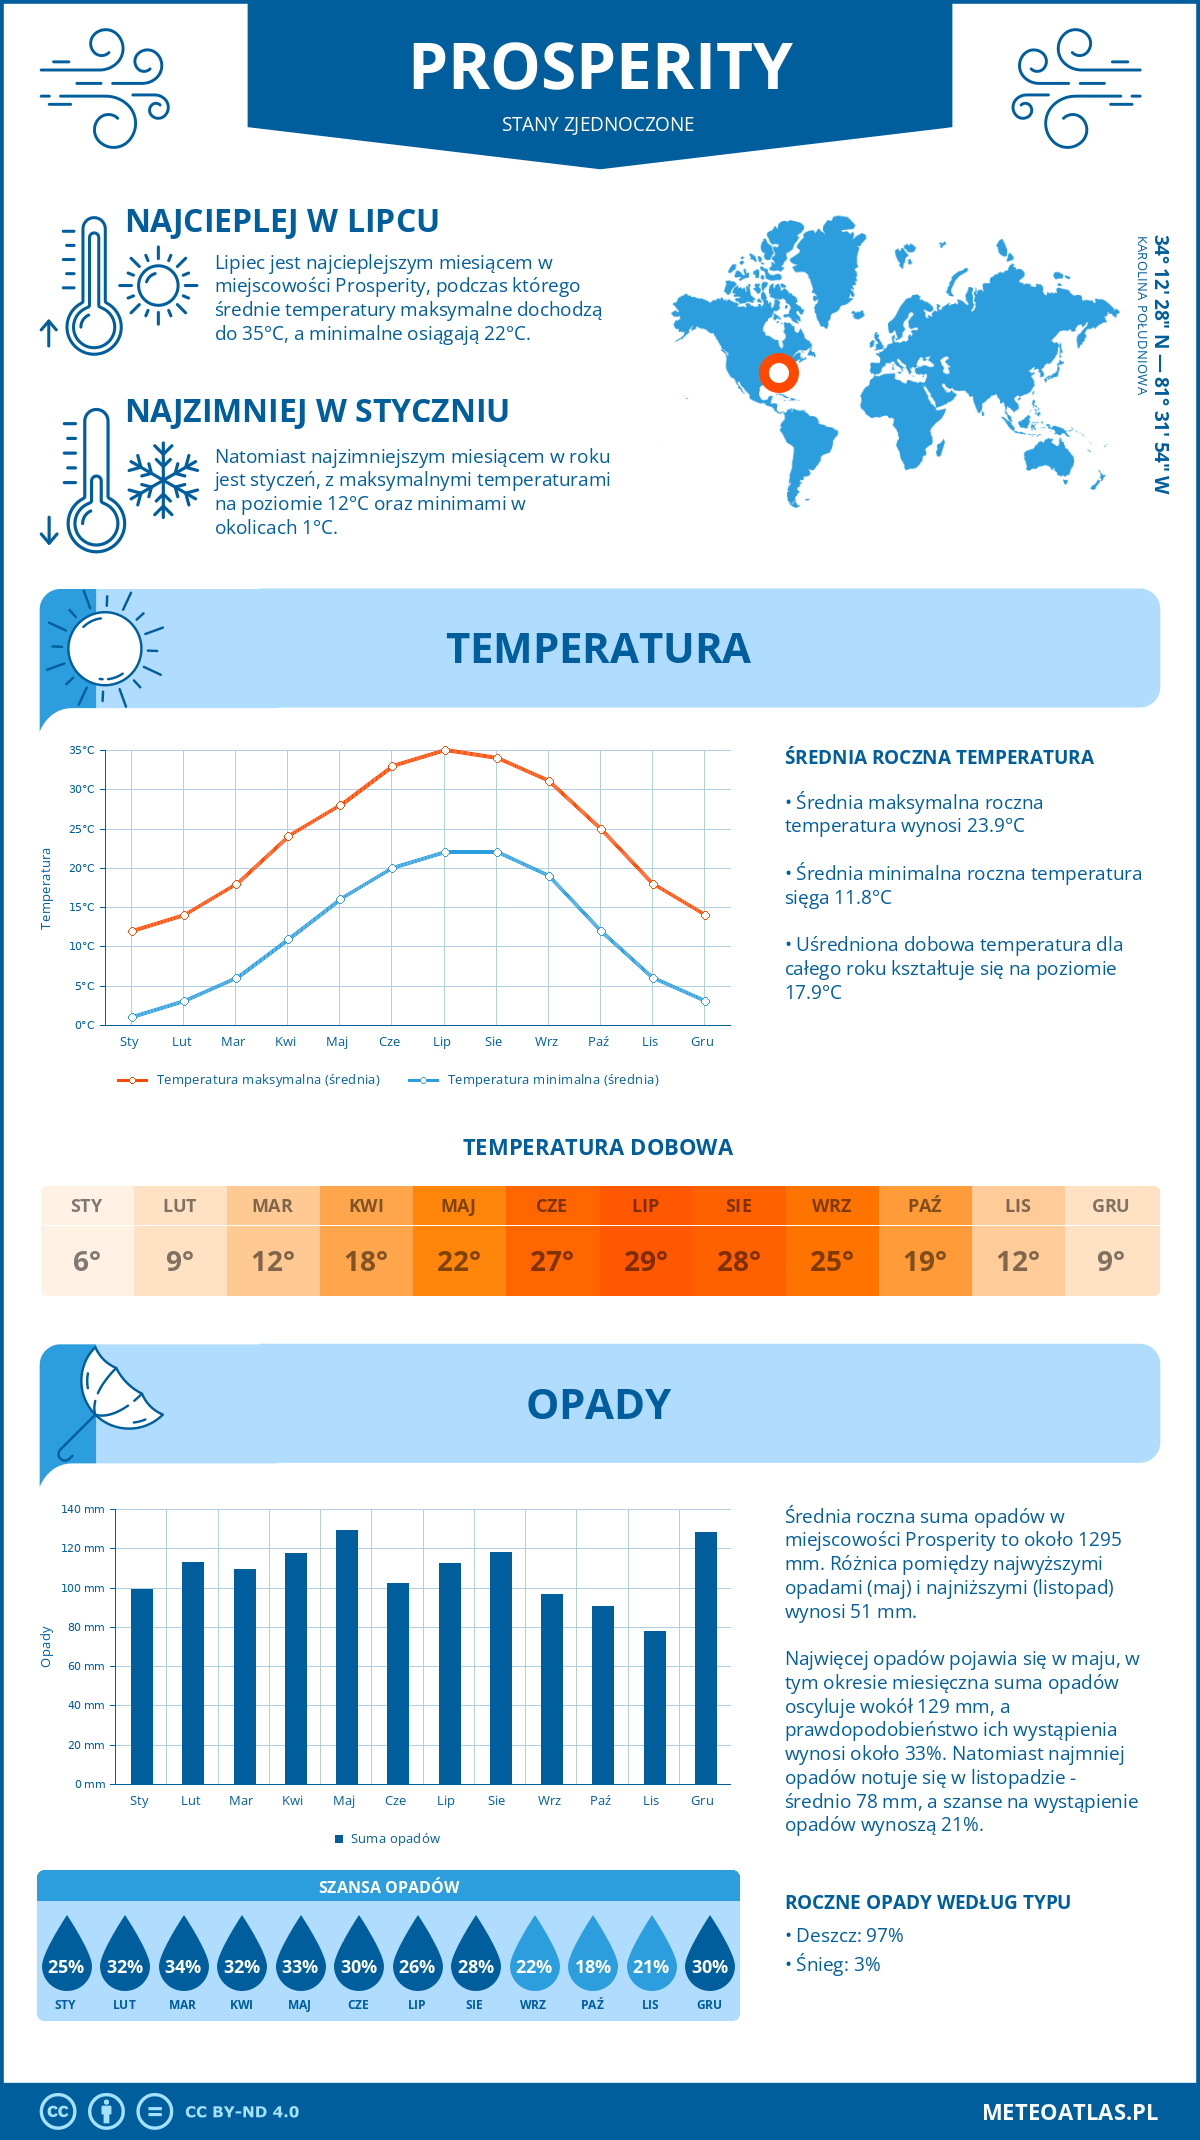 Pogoda Prosperity (Stany Zjednoczone). Temperatura oraz opady.